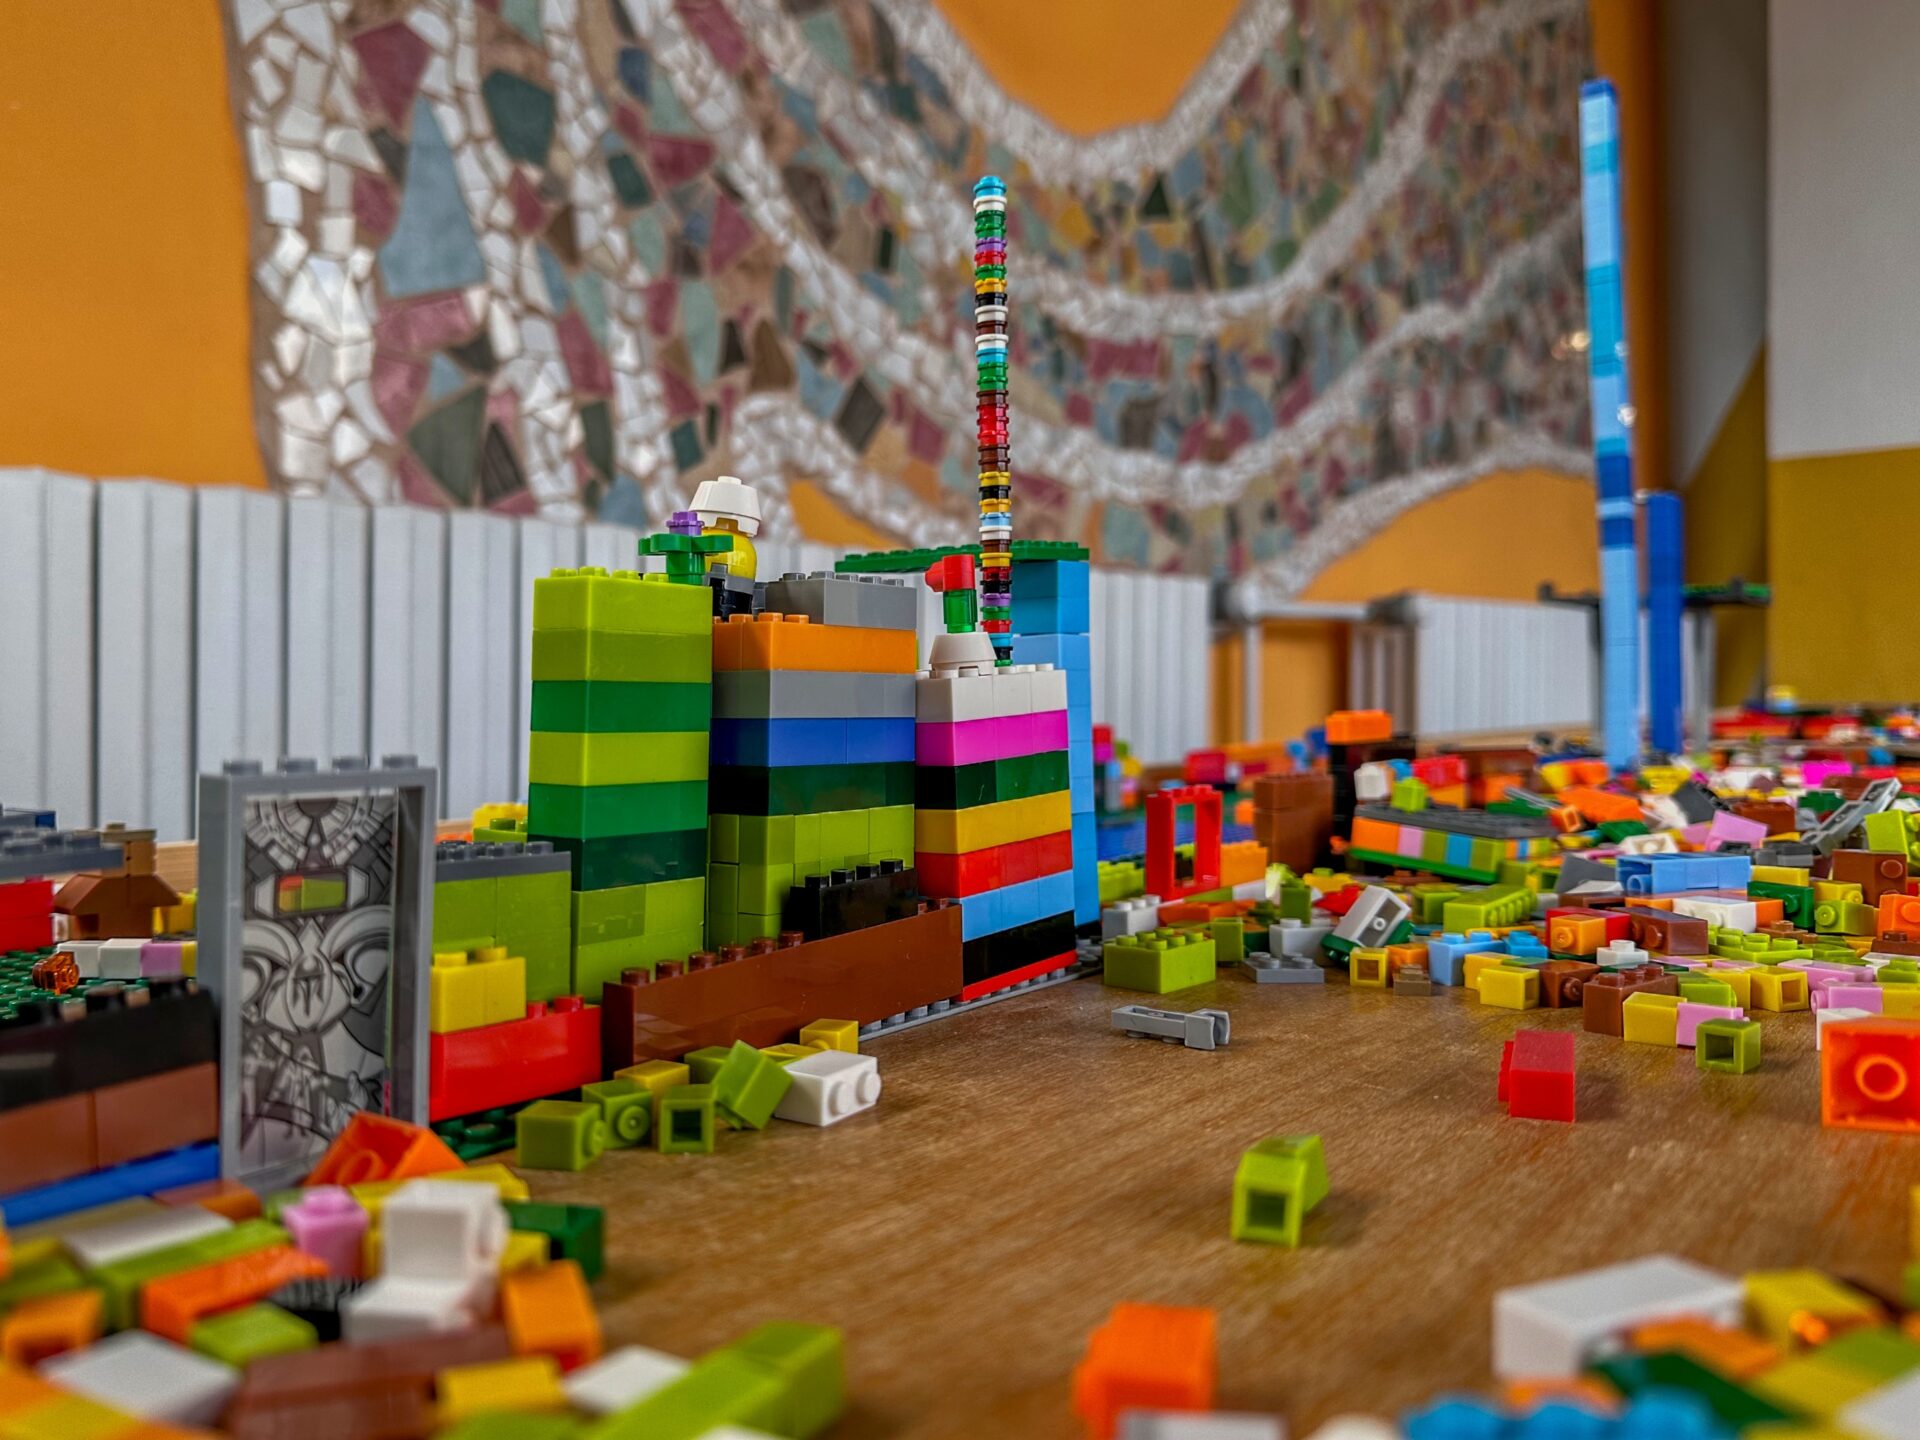 Lego stavebnice na chodbě školy